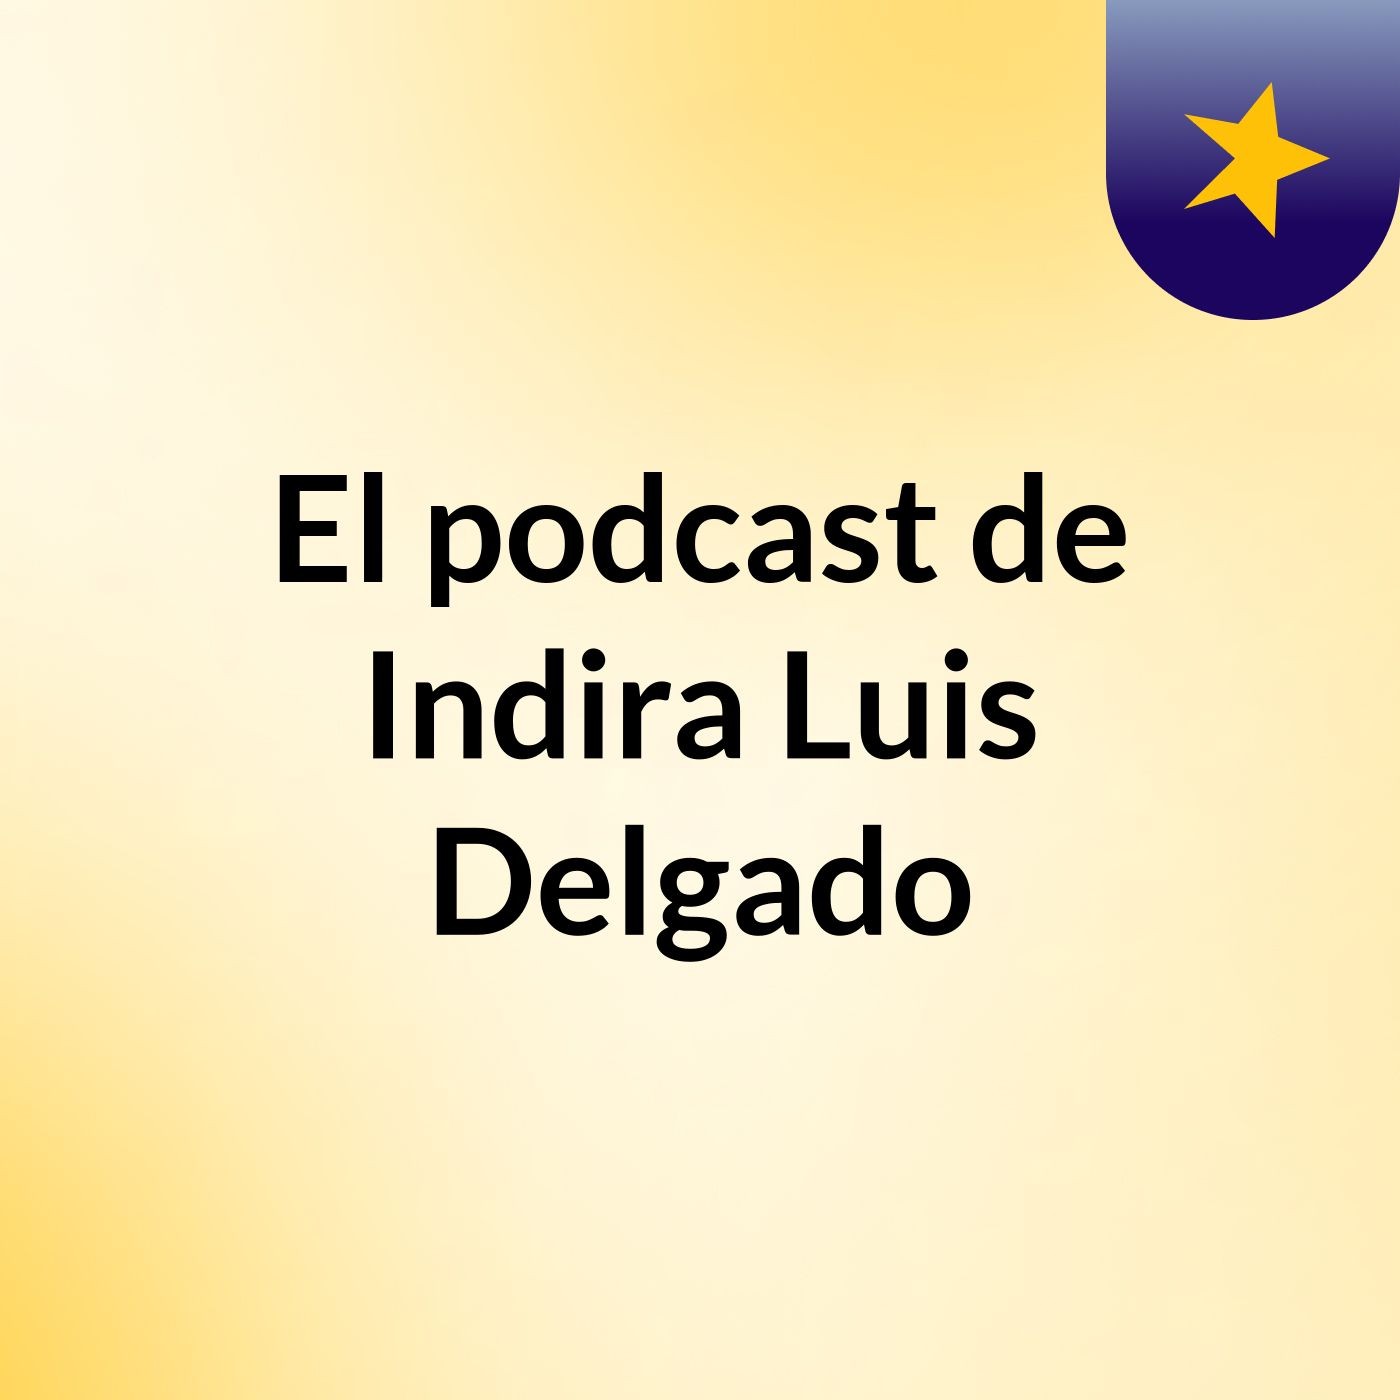 El podcast de Indira Luis Delgado